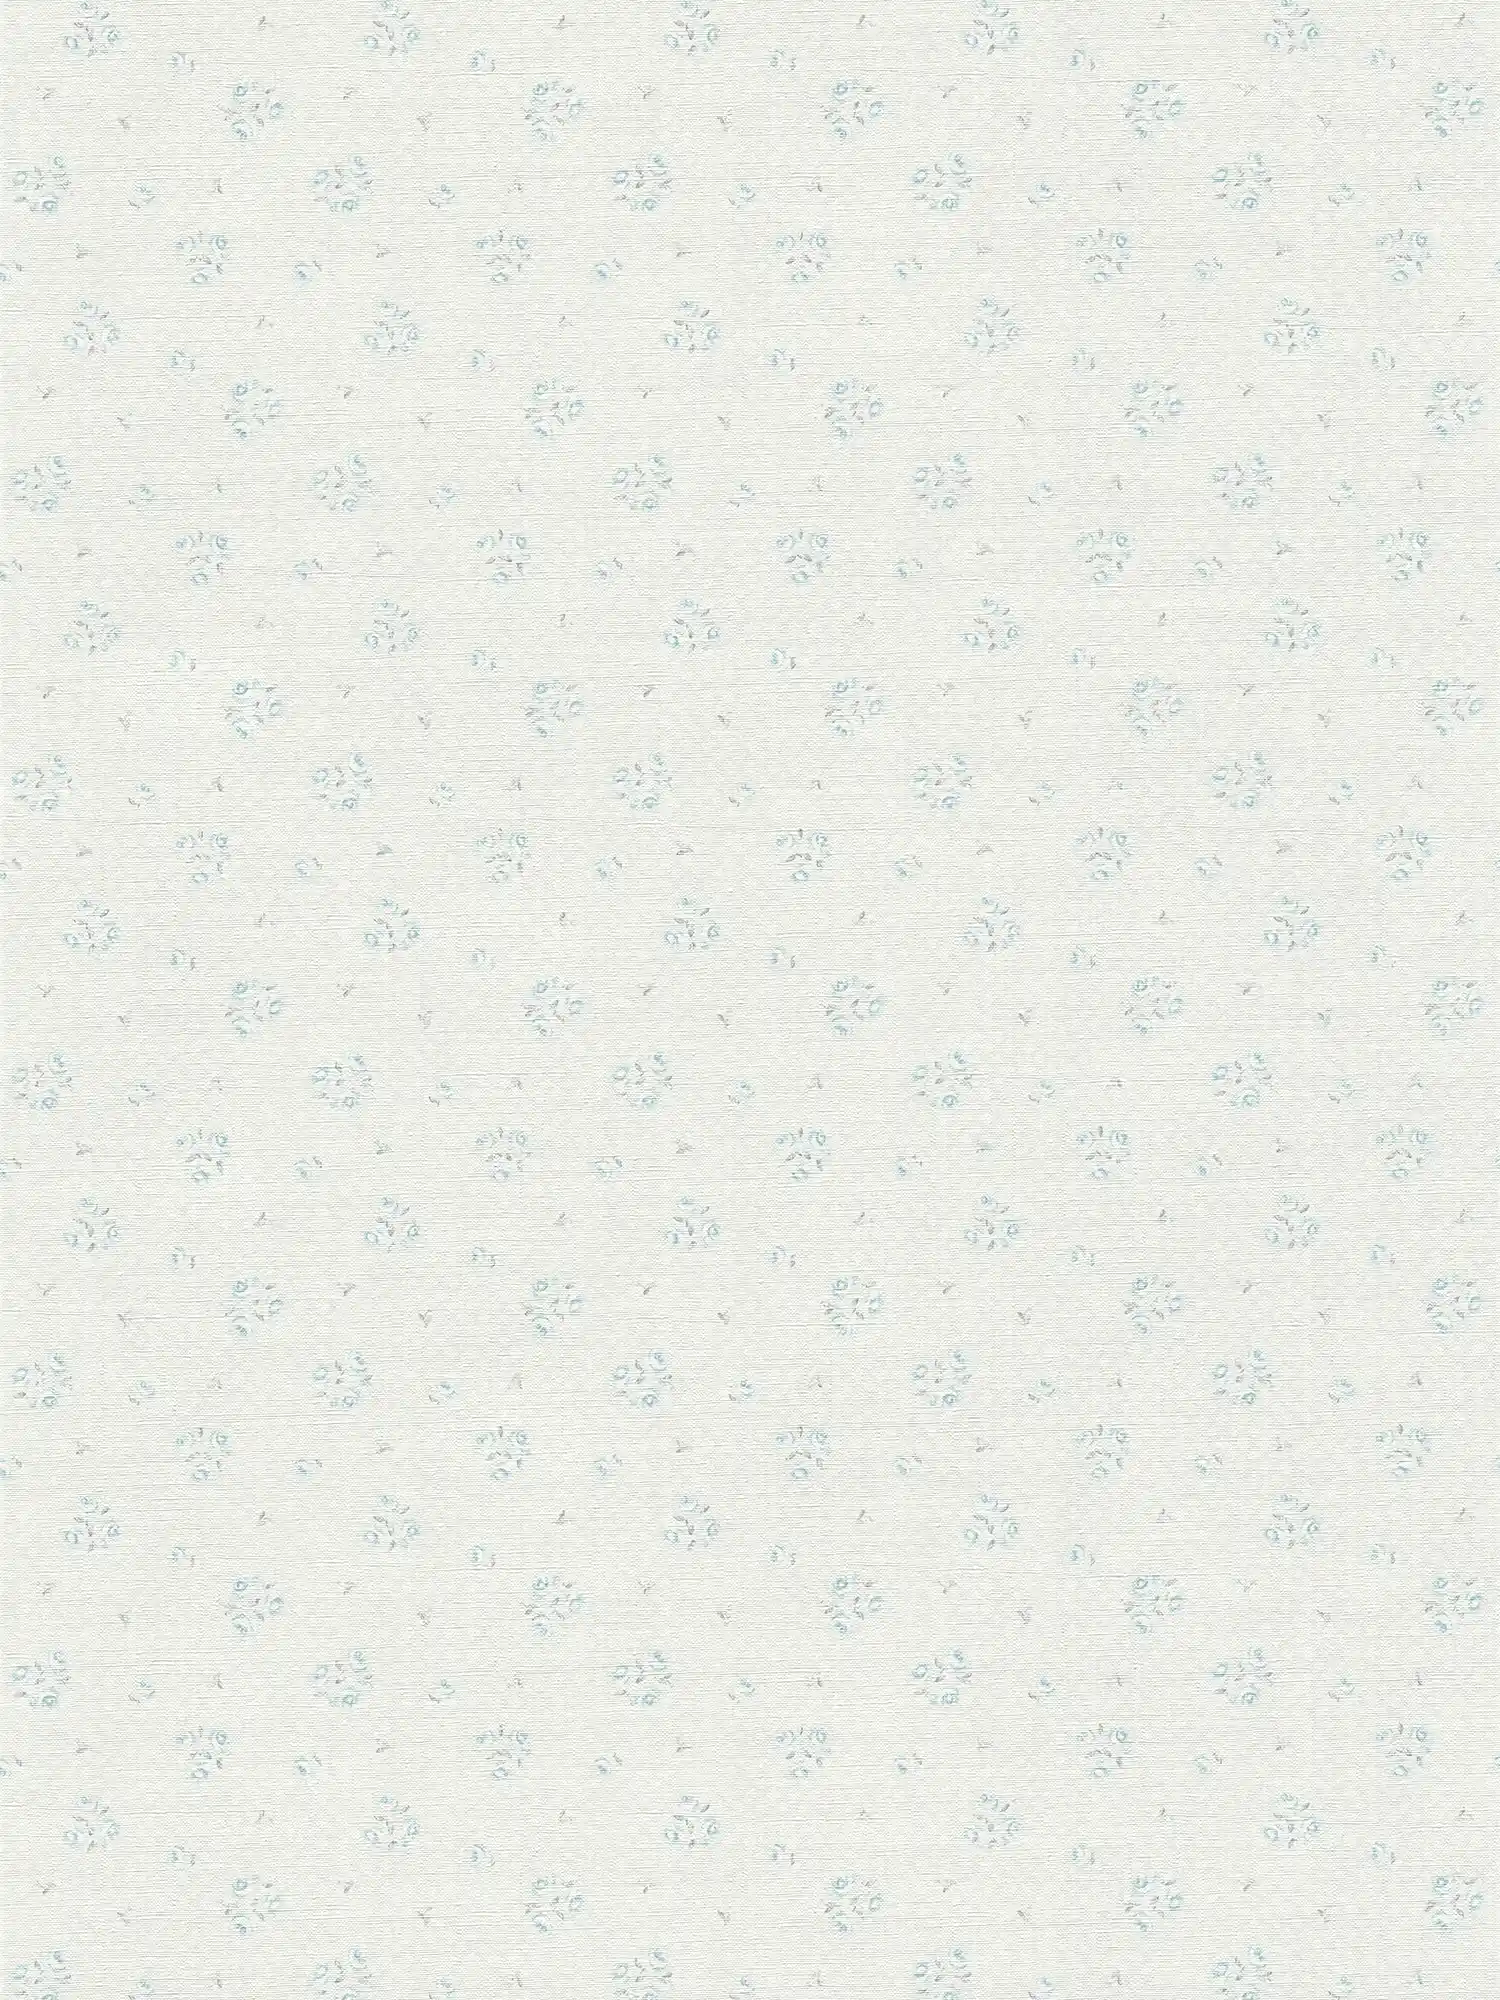 Landhaus Tapete mit floralem Muster im Shabby Chic Stil – Hellgrau, Blau, Weiß
